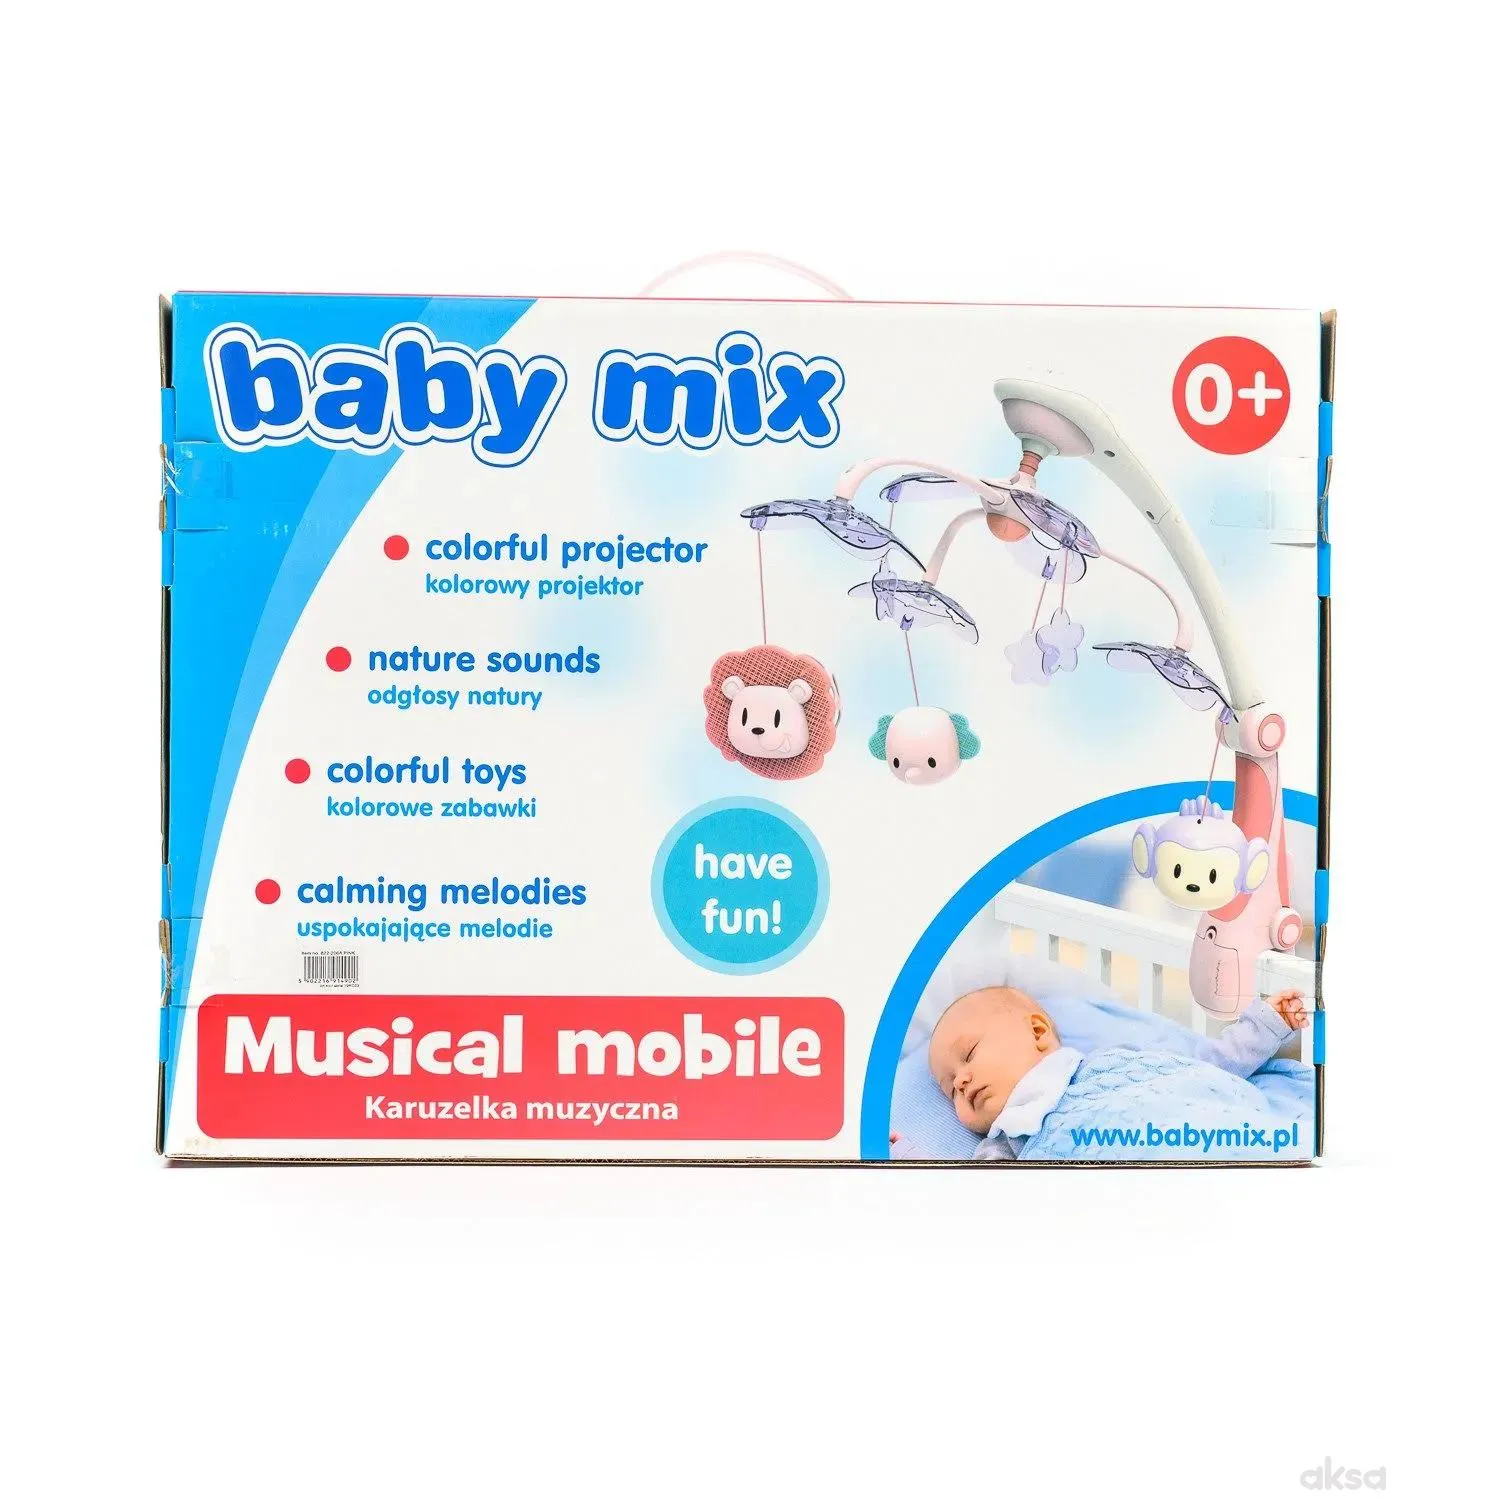 Baby Mix muzička vrteška vesele životinjice roze 